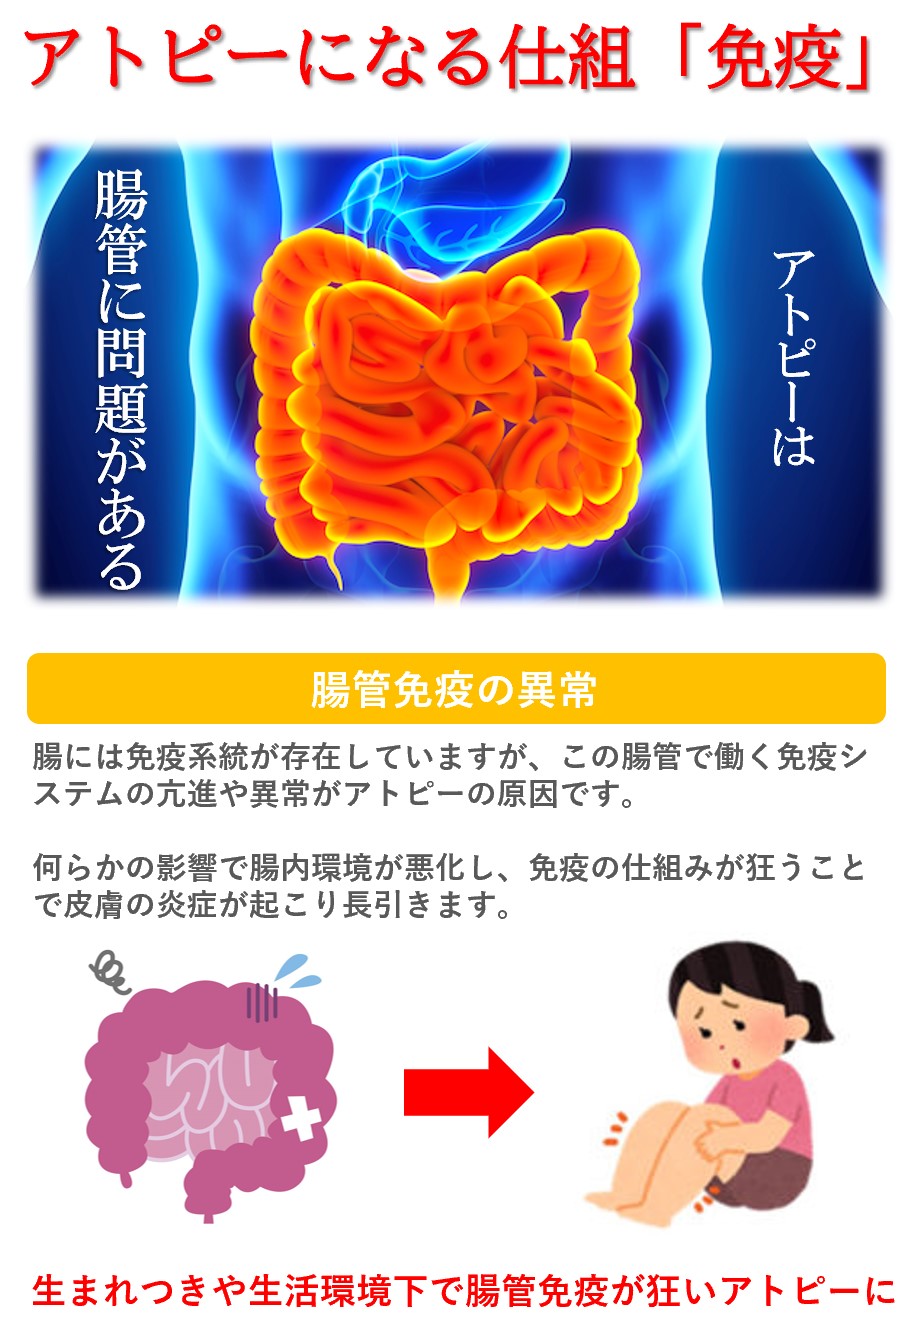 アトピーの原因：腸内環境悪化による免疫バランスの悪化